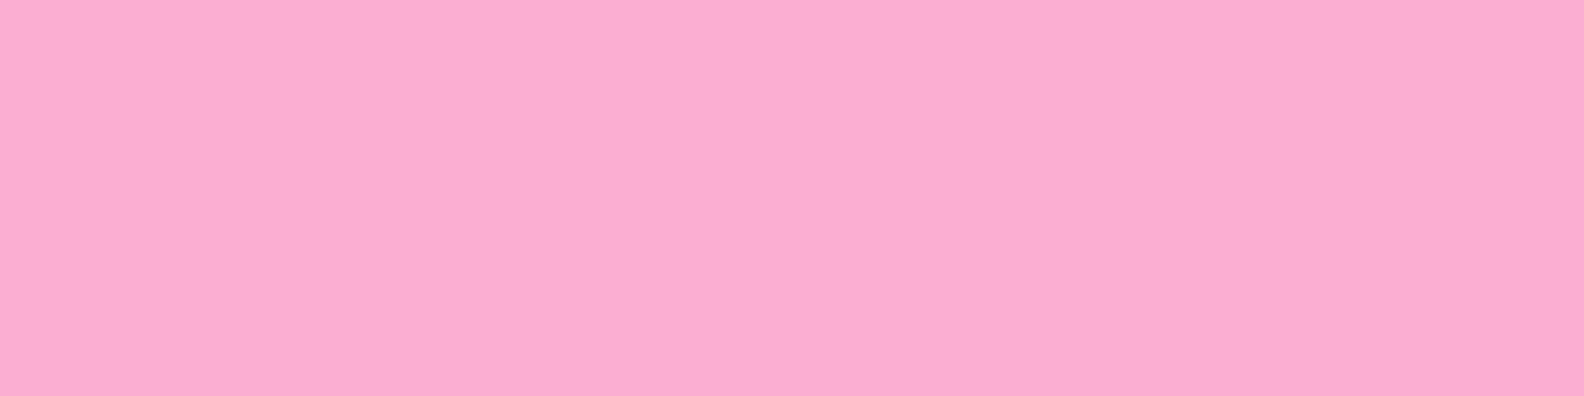 1584x396 Lavender Pink Solid Color Background